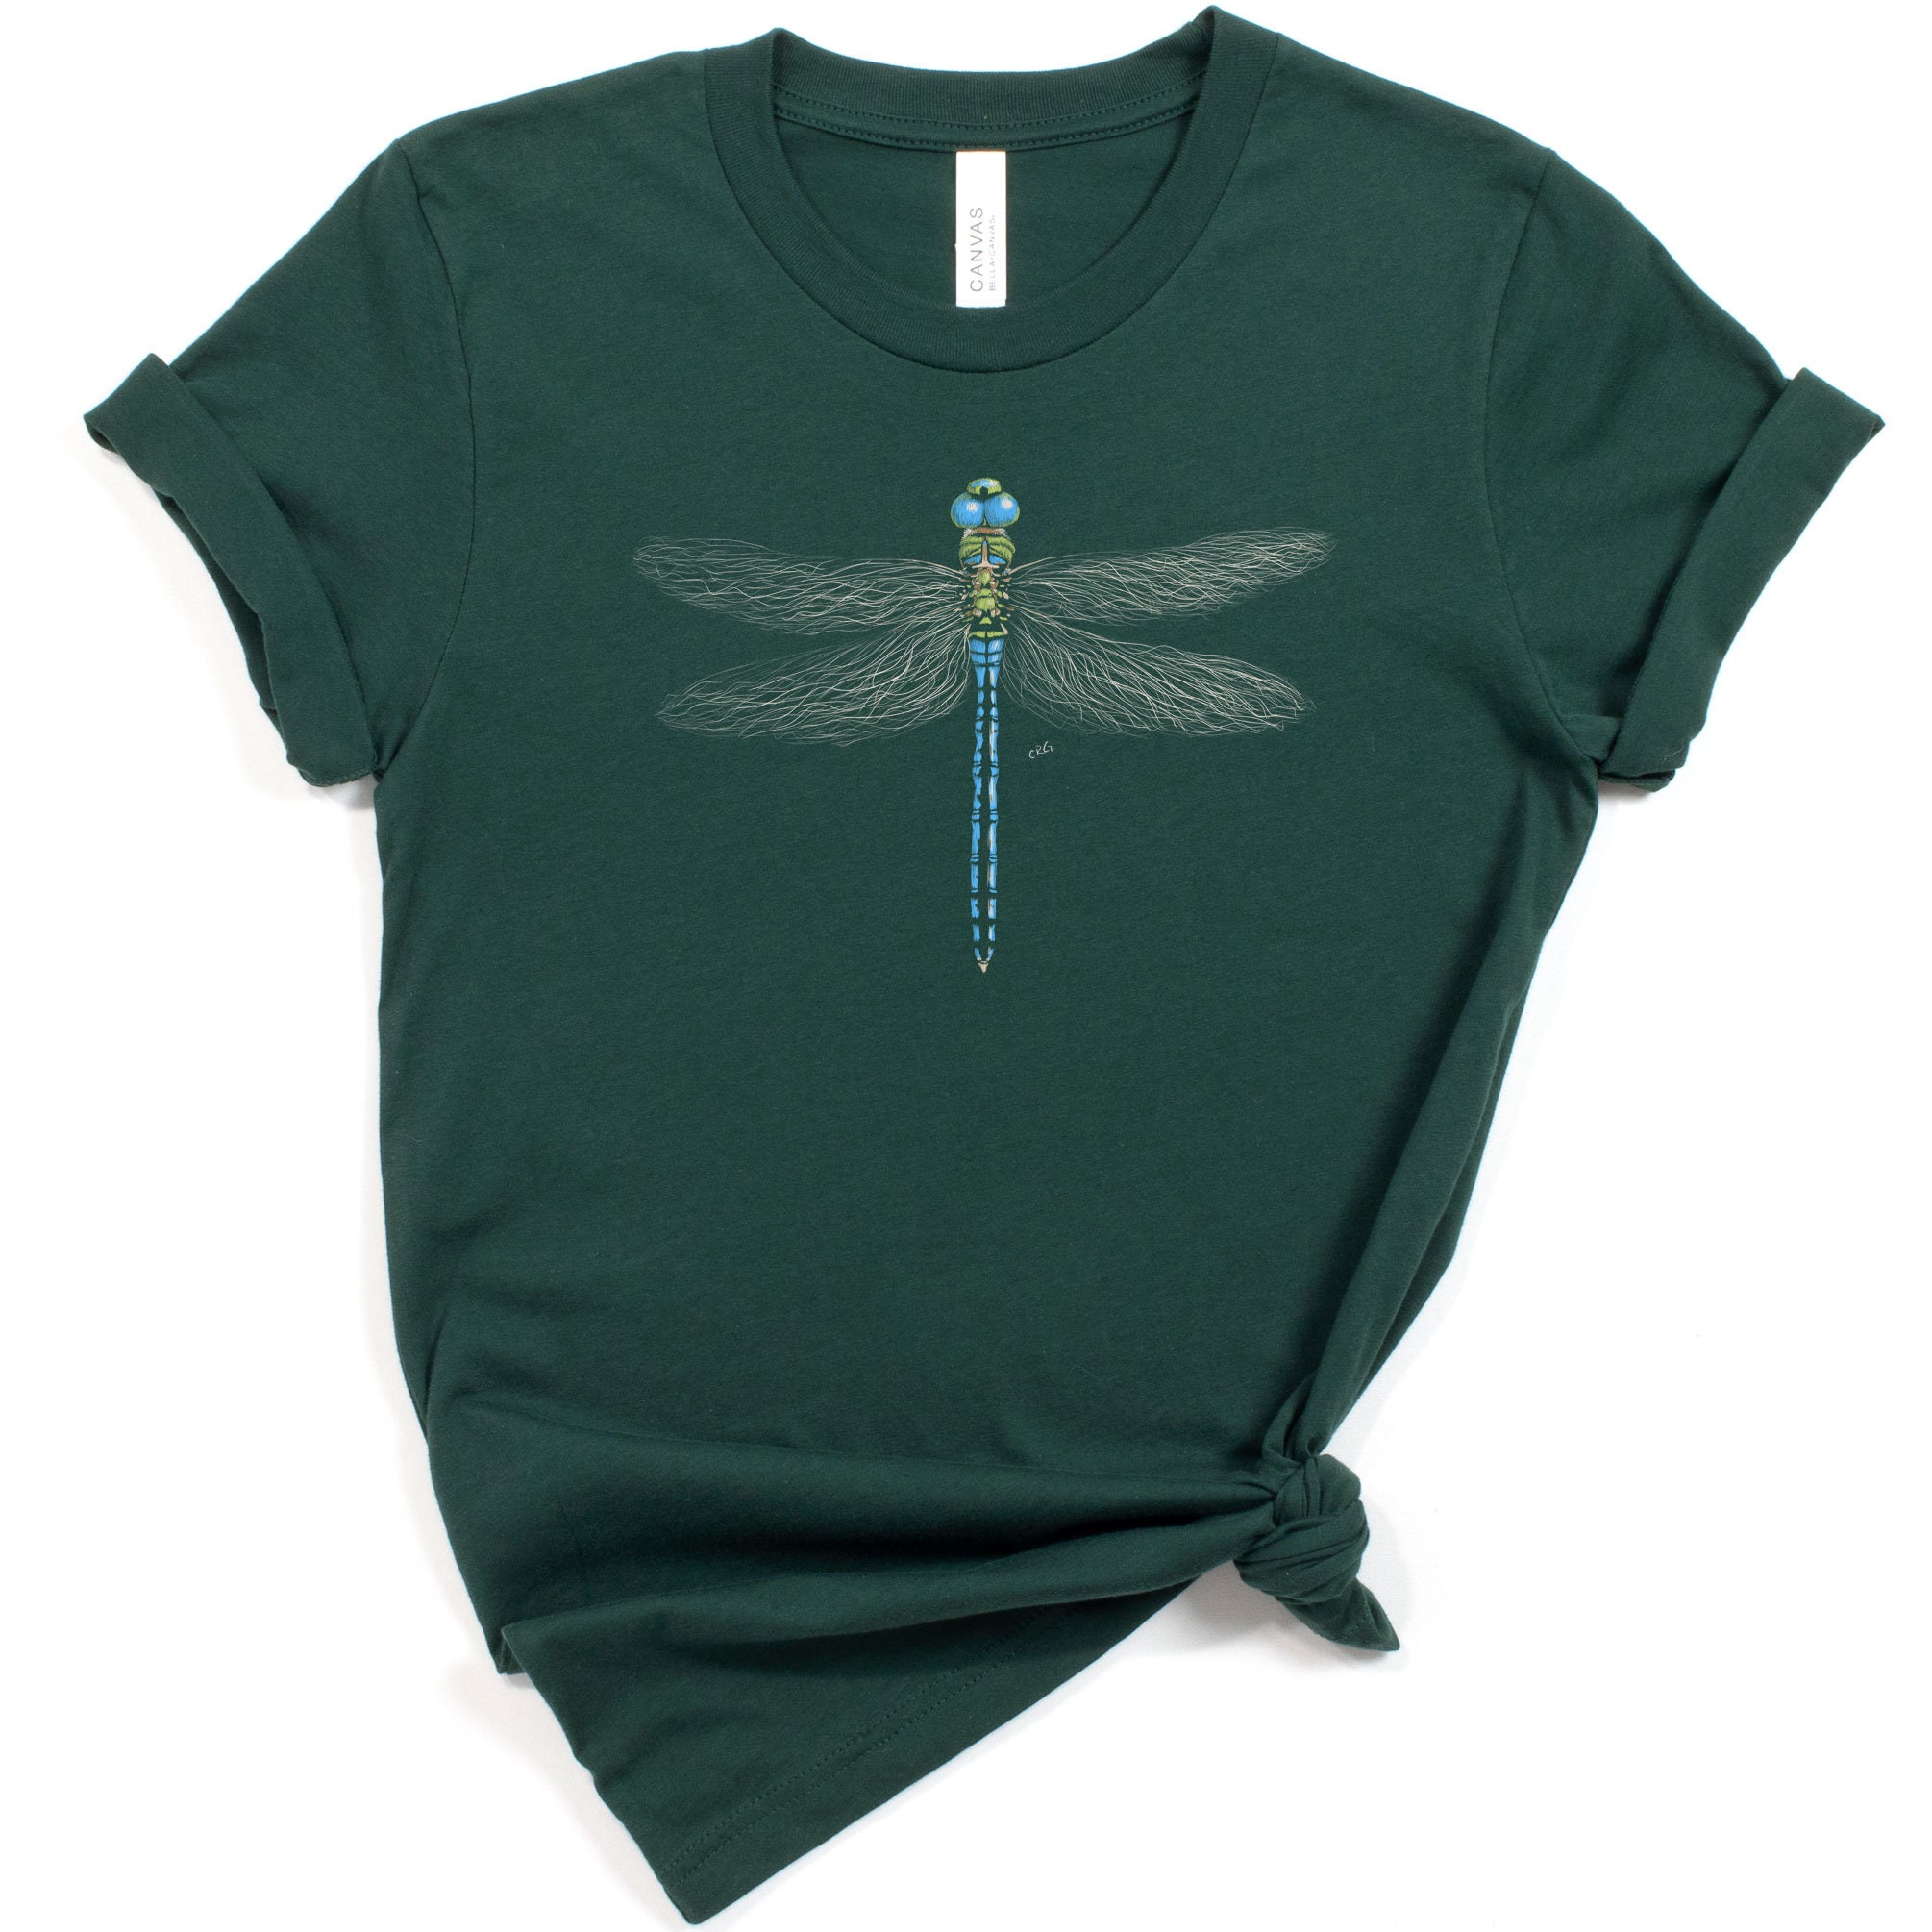 Dragonfly Shirt / Dragonfly / Dragonfly Gift / Dragonfly | Etsy